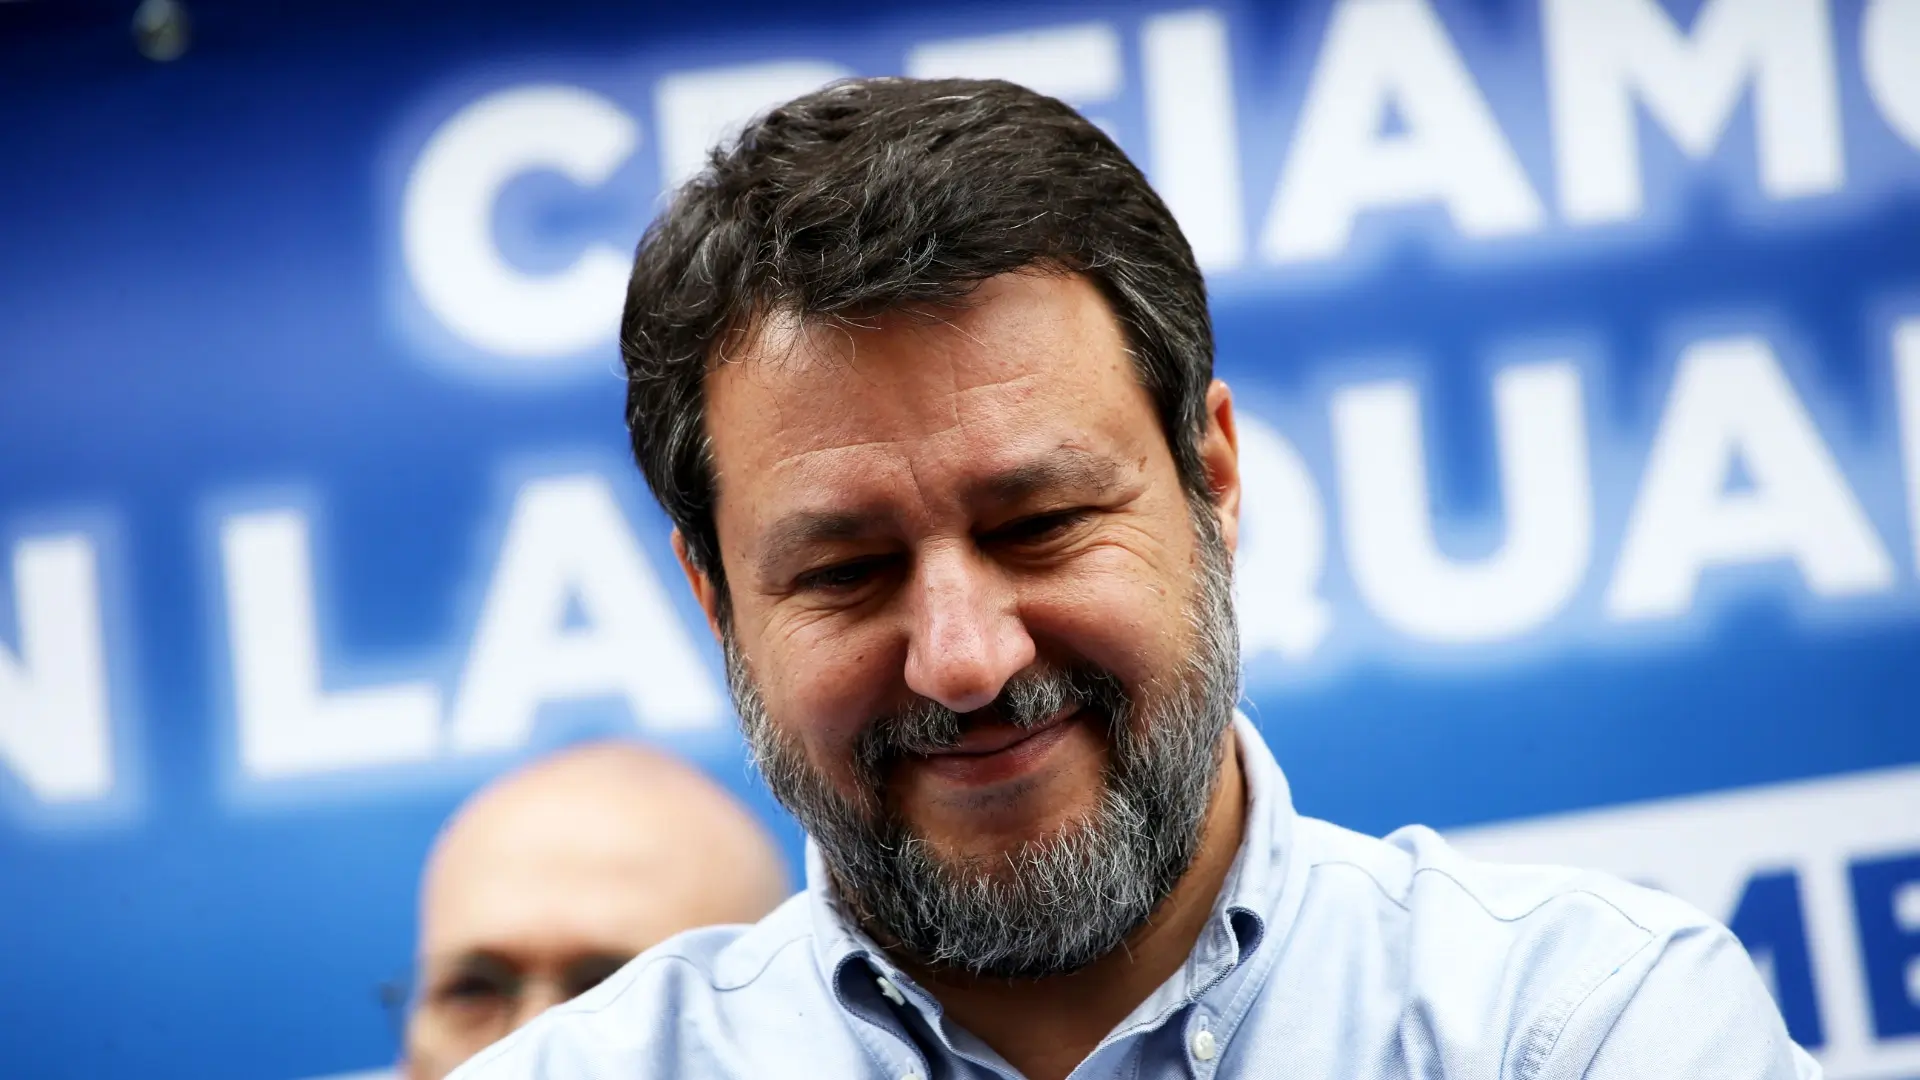 Il ministro Salvini esprime il suo dissenso contro il rialzo dei tassi annuncianti da Lagarde